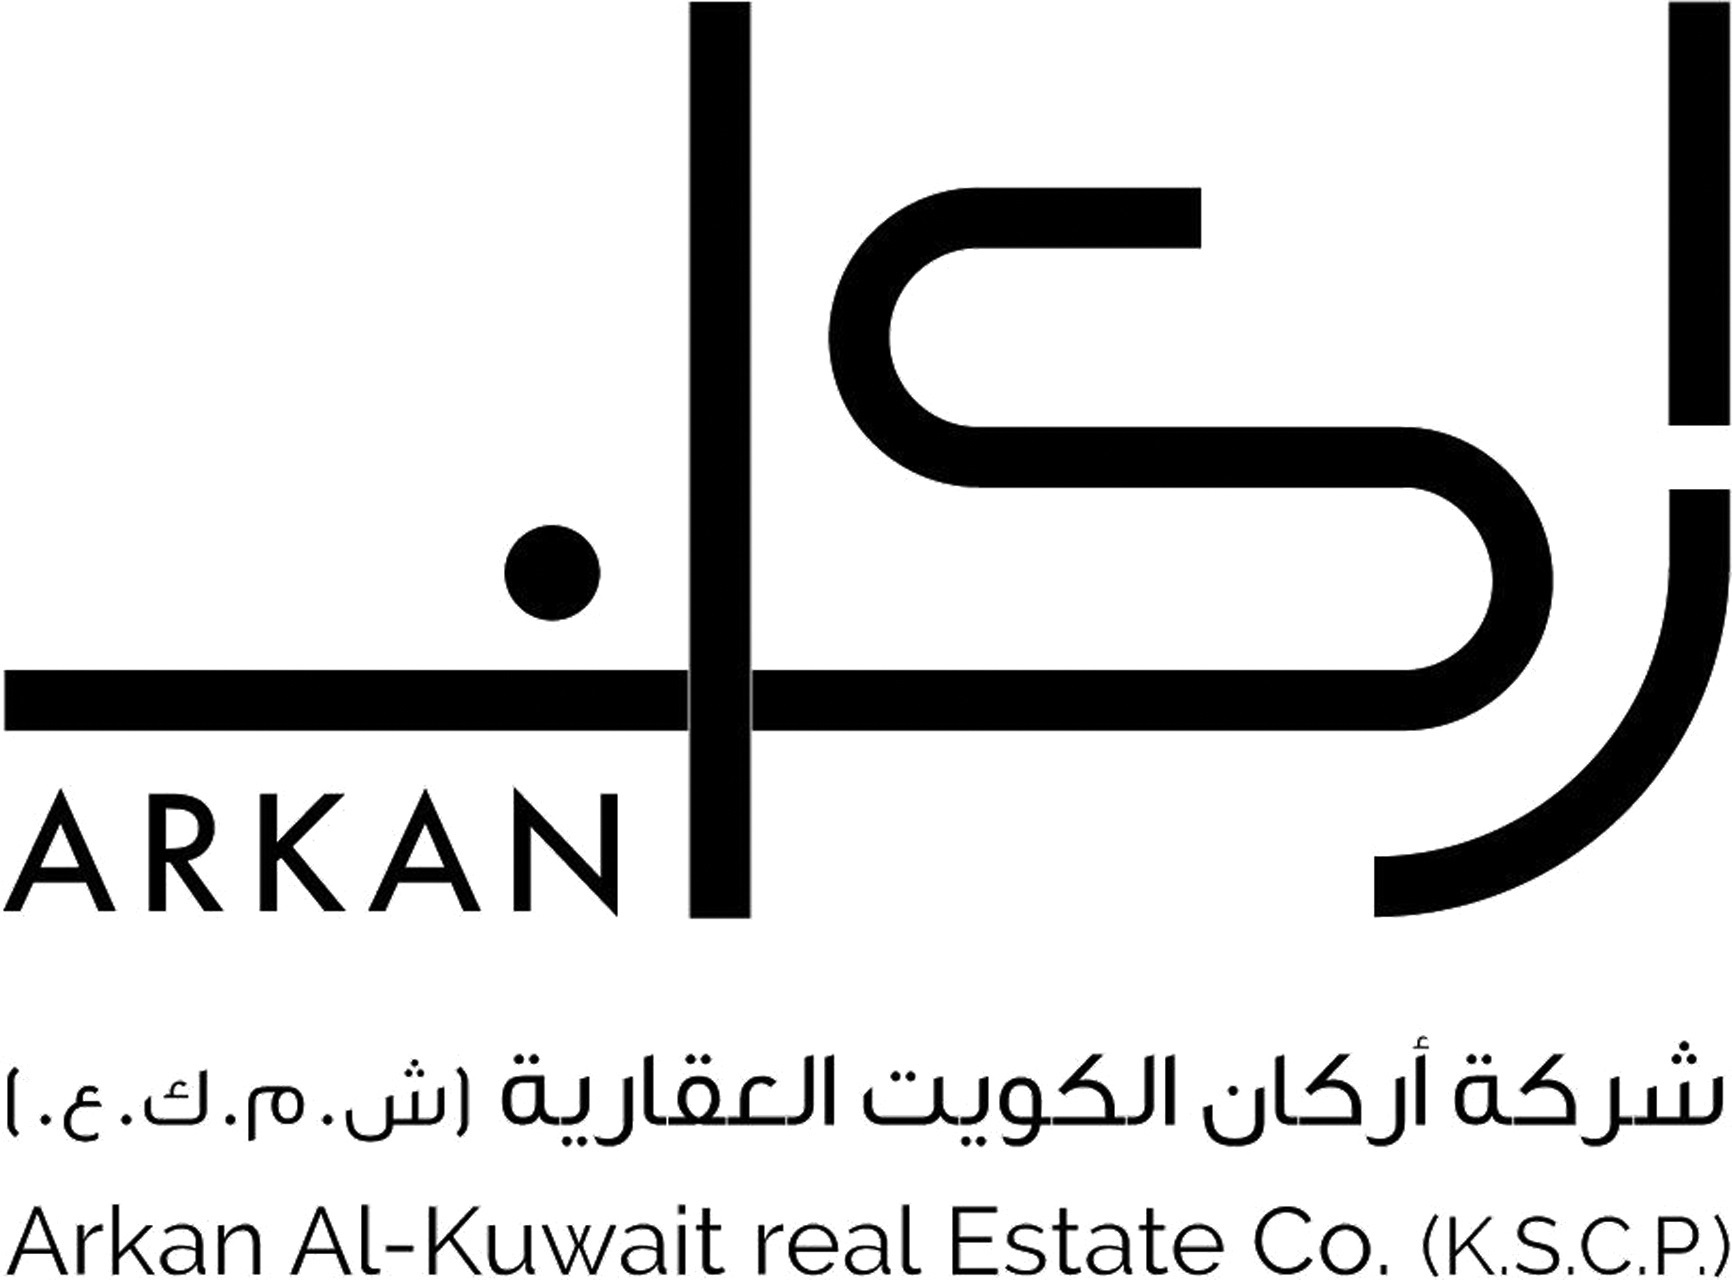 شركة أركان العقارية الكويتية توزّع أرباحا نقدية بنسبة 6%